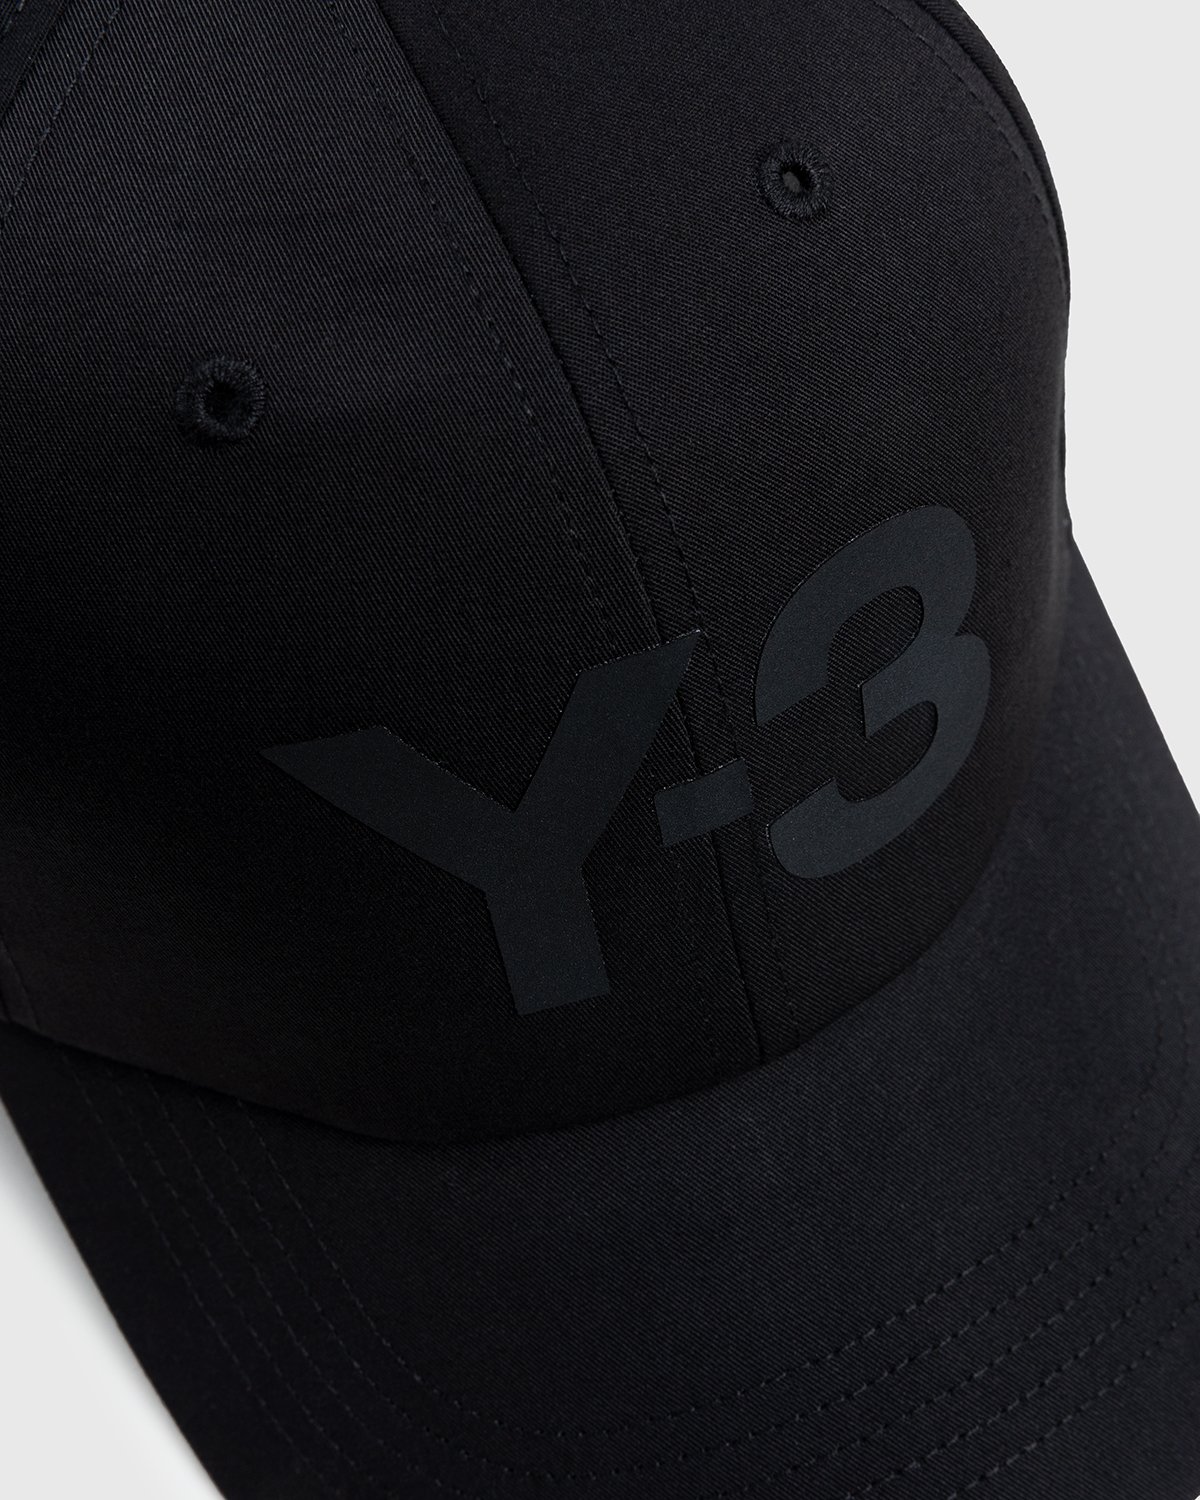 Y-3 - Logo Cap Black - Accessories - Black - Image 4